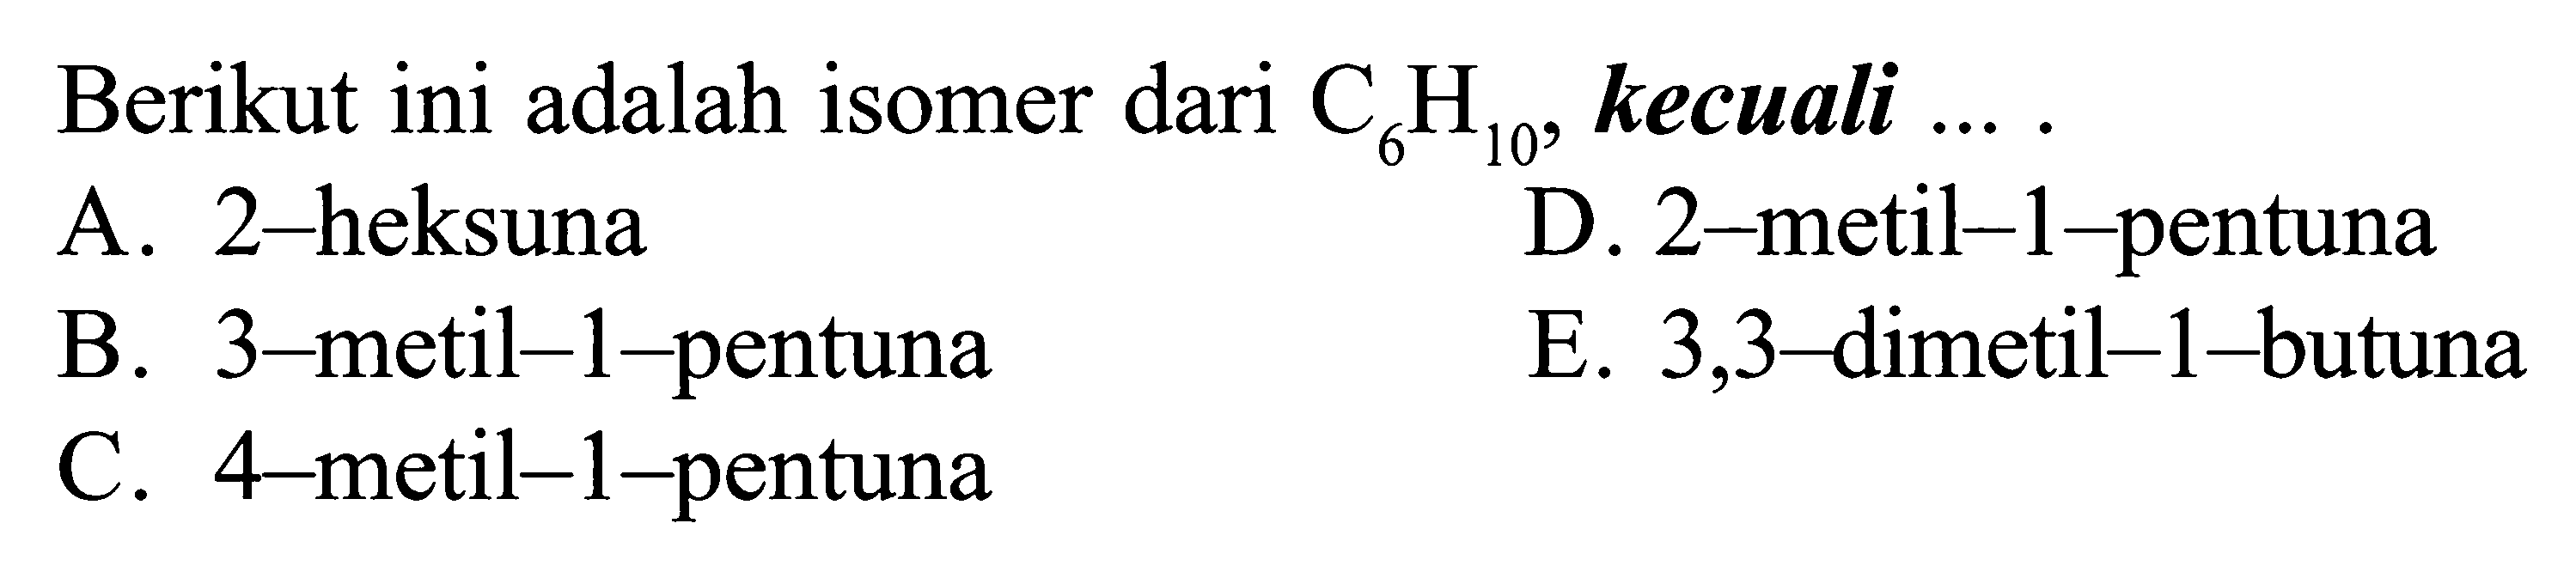 Berikut ini adalah isomer dari C6H10, kecuali ... .